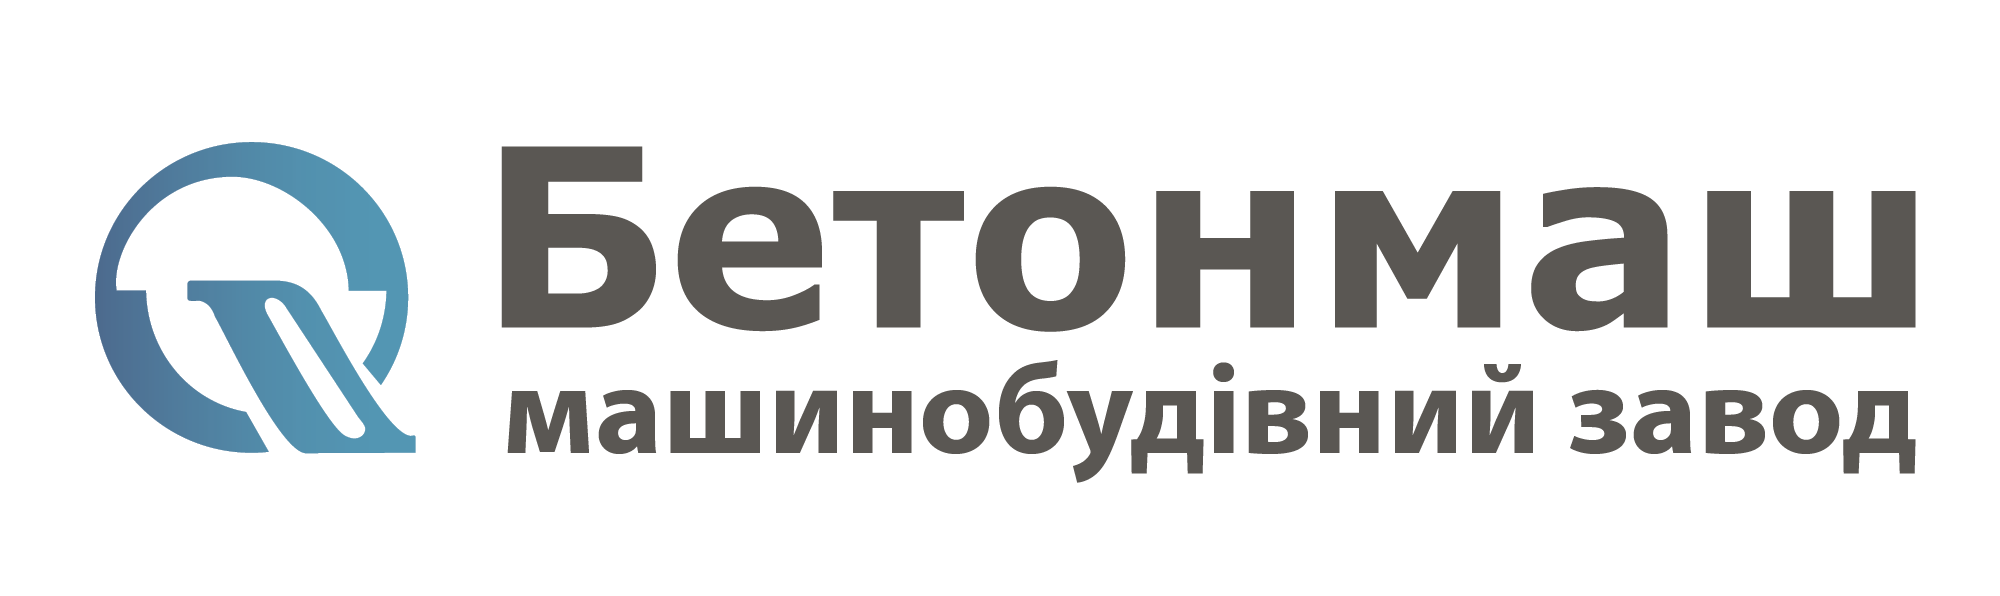 logo_1_укр